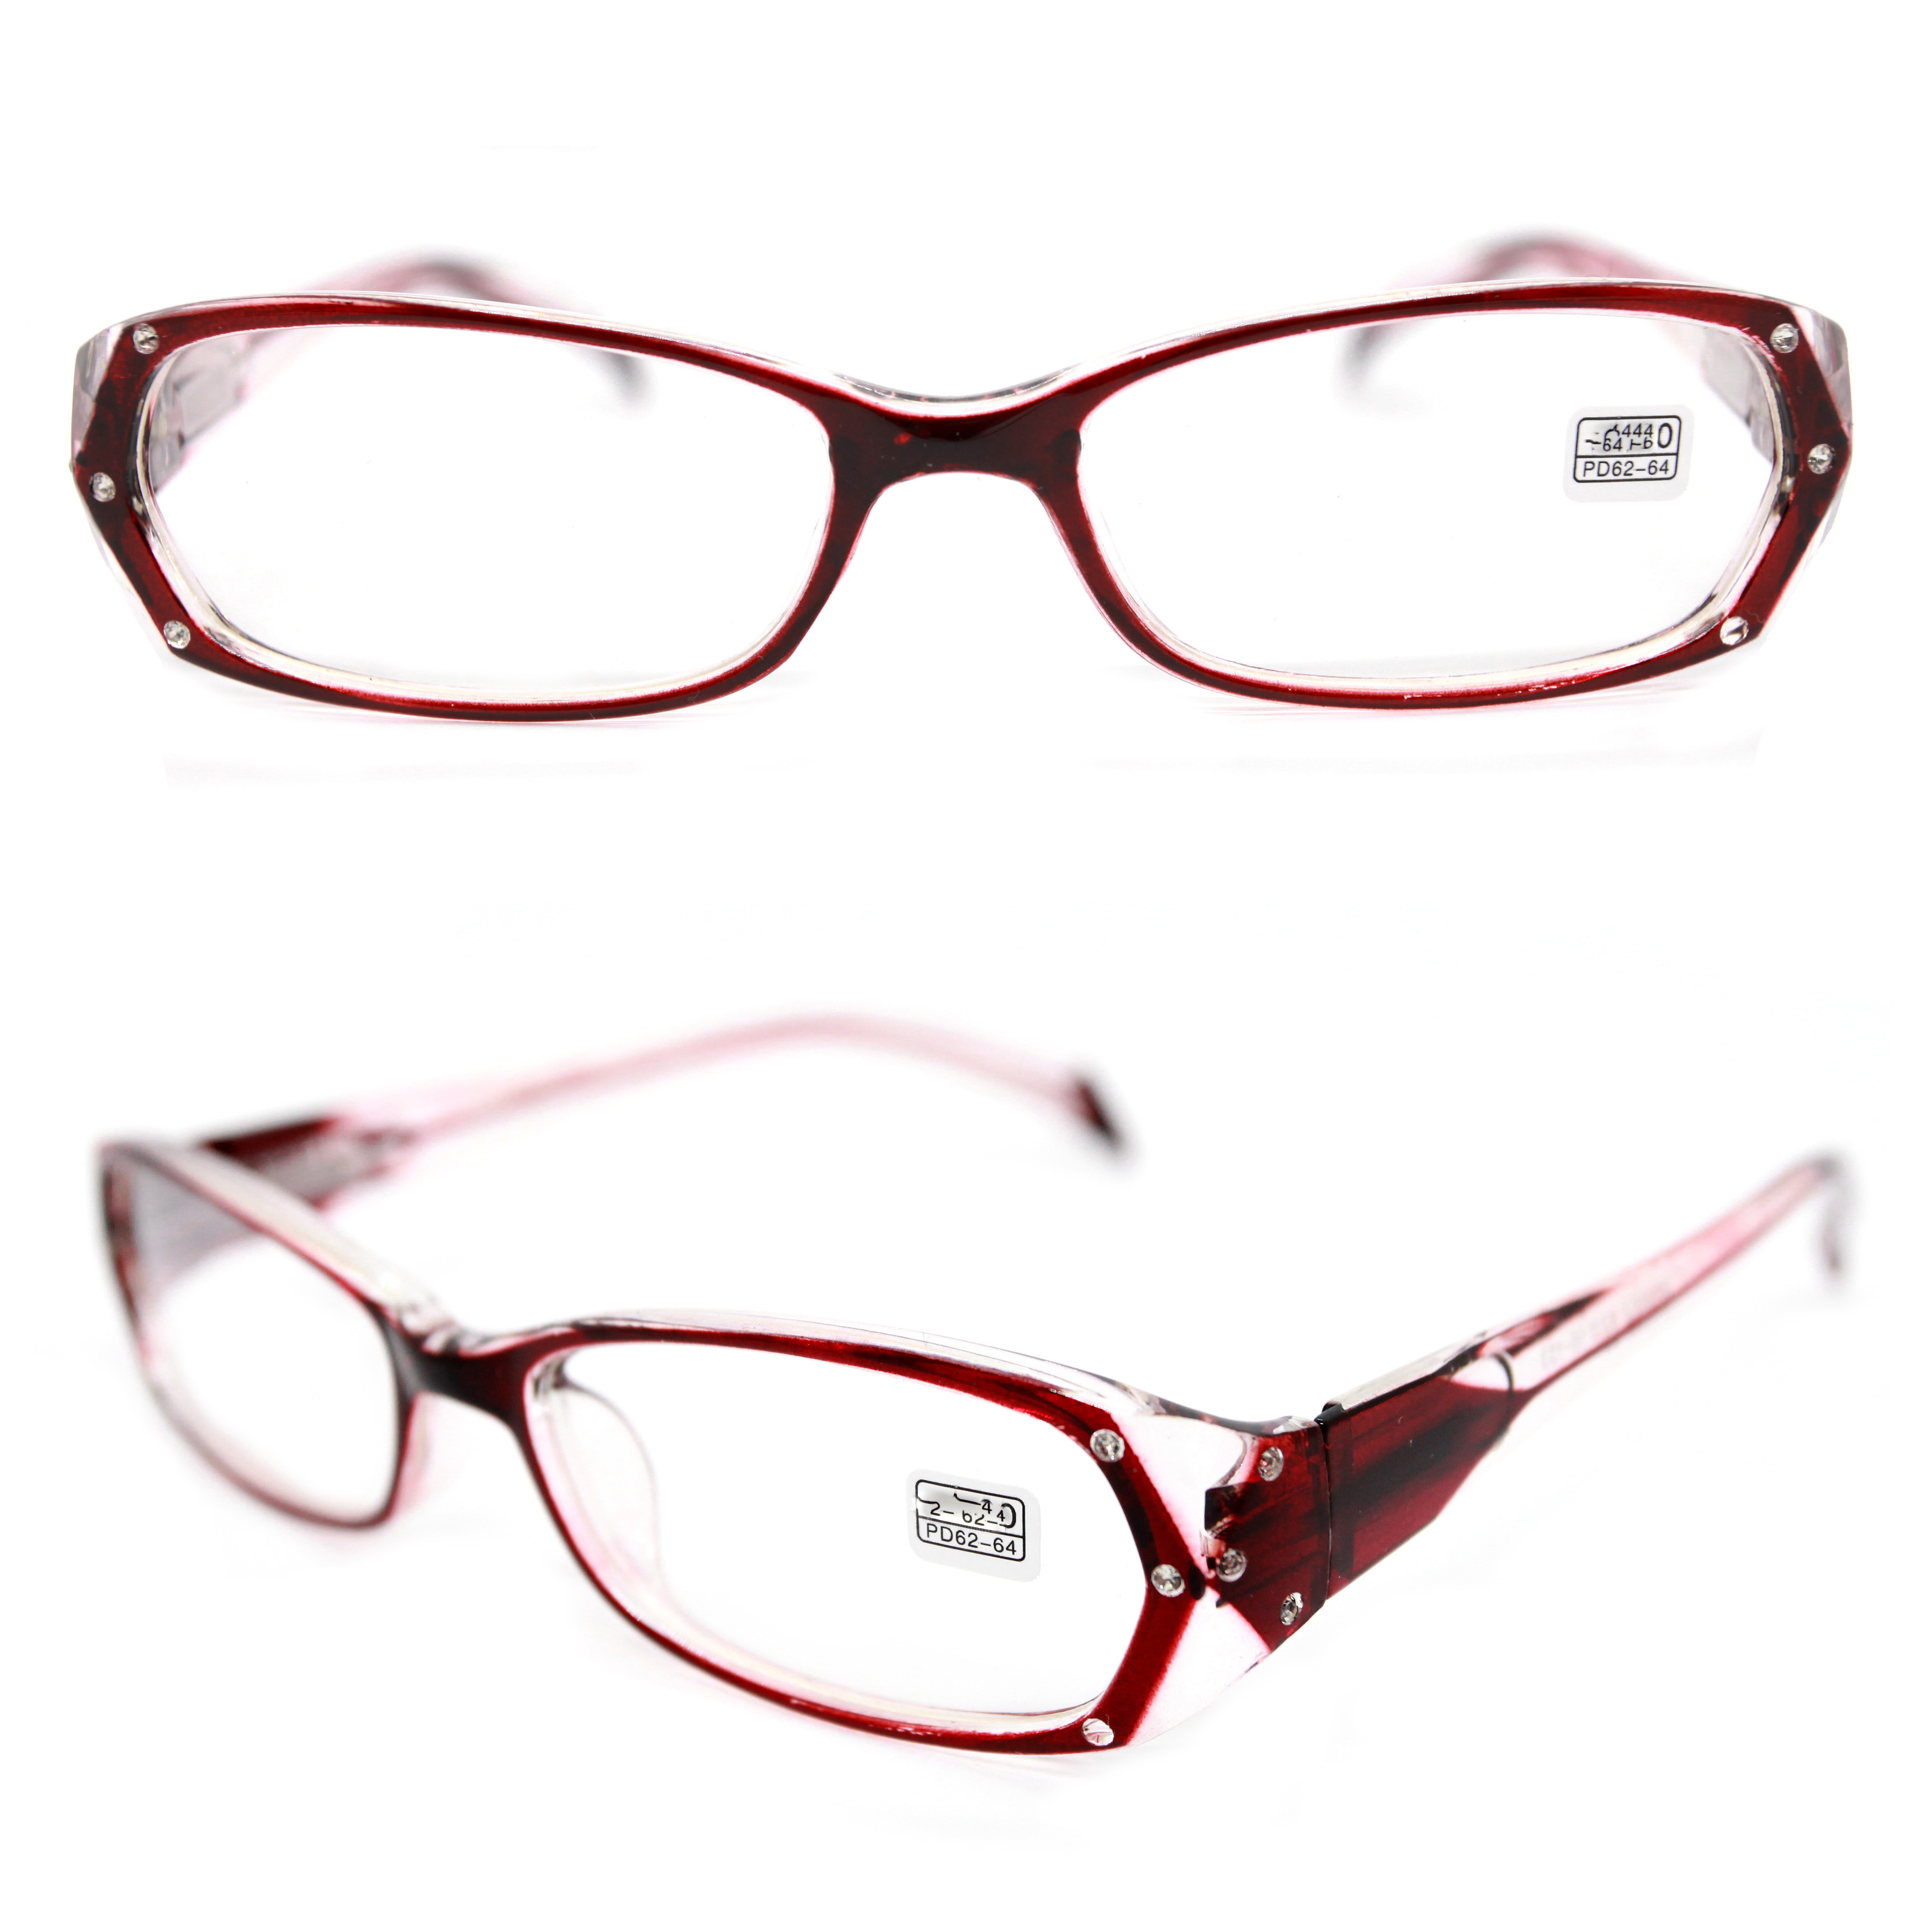 Корригирующие очки ВОСТОК 8852 +2,75, для чтения, бордовый, РЦ 62-64